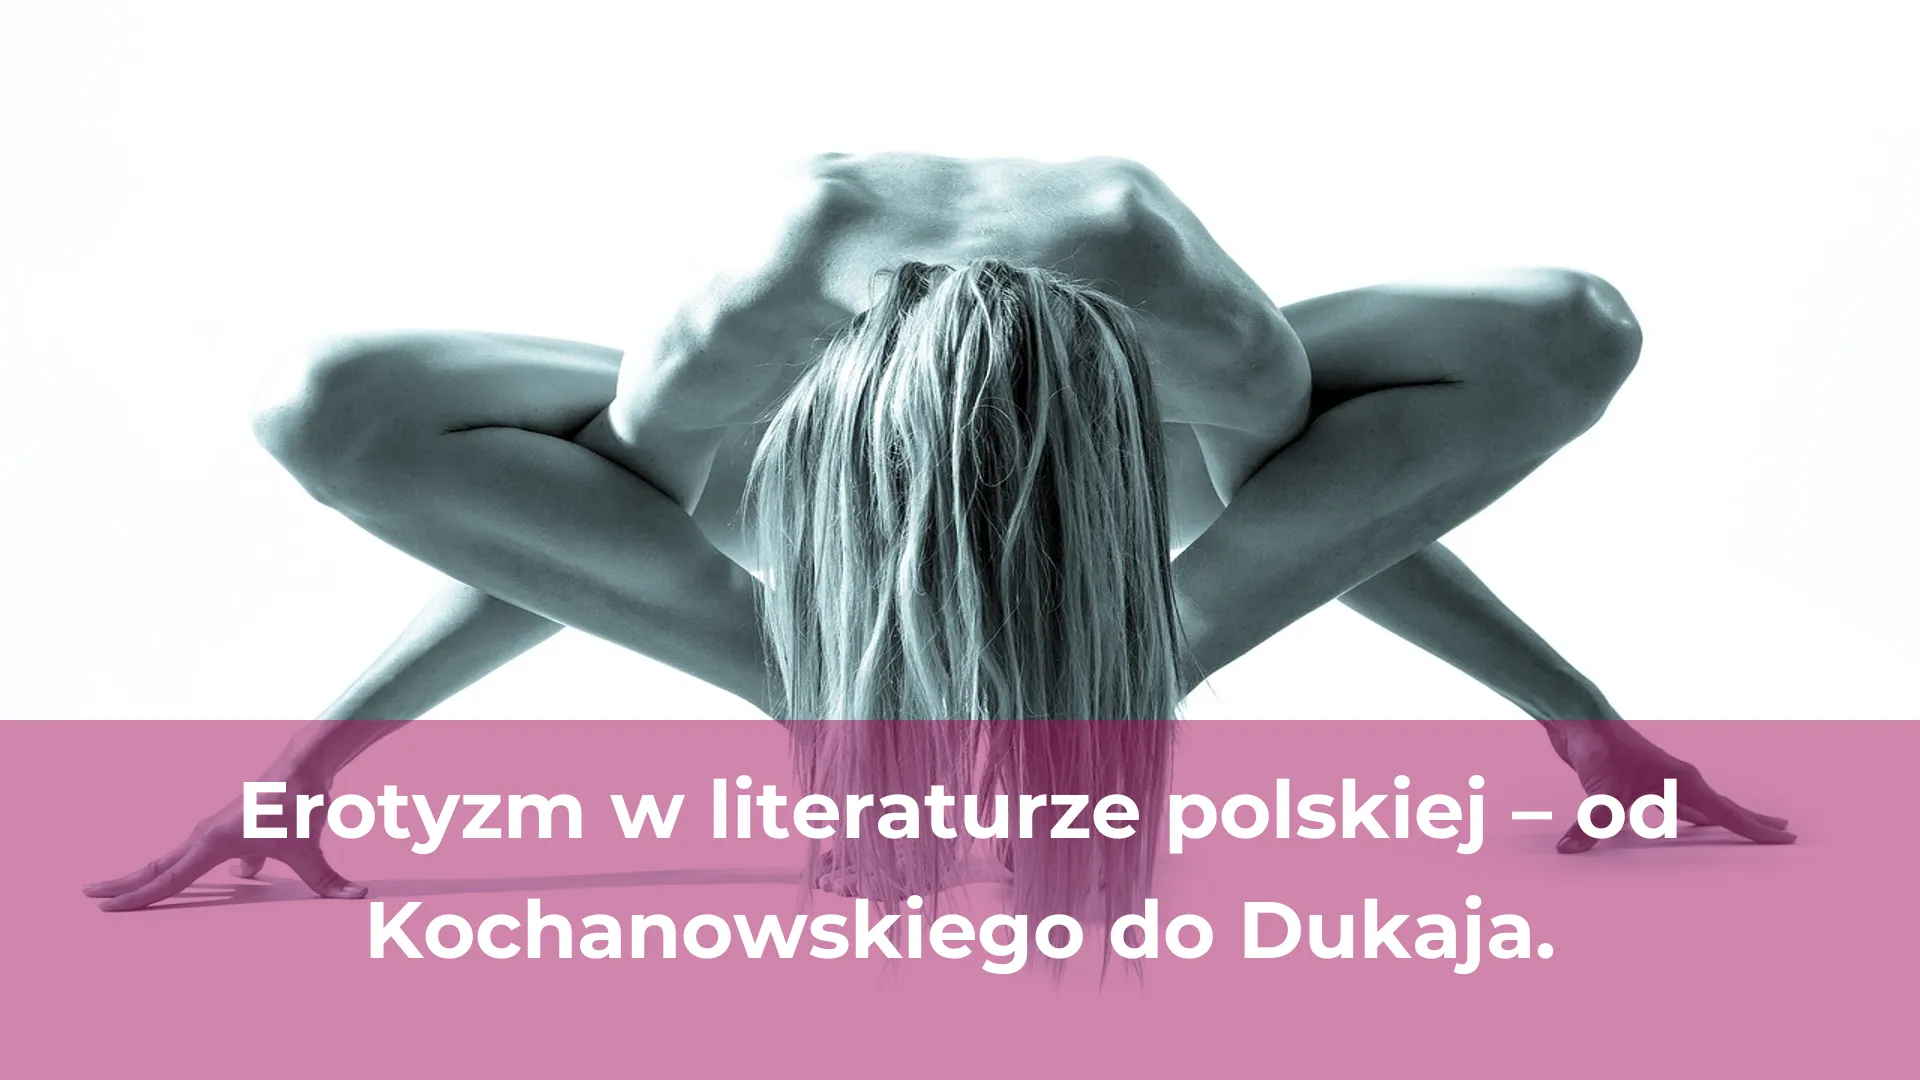 Erotyzm w literaturze polskiej od kochanowskiego do dukaja